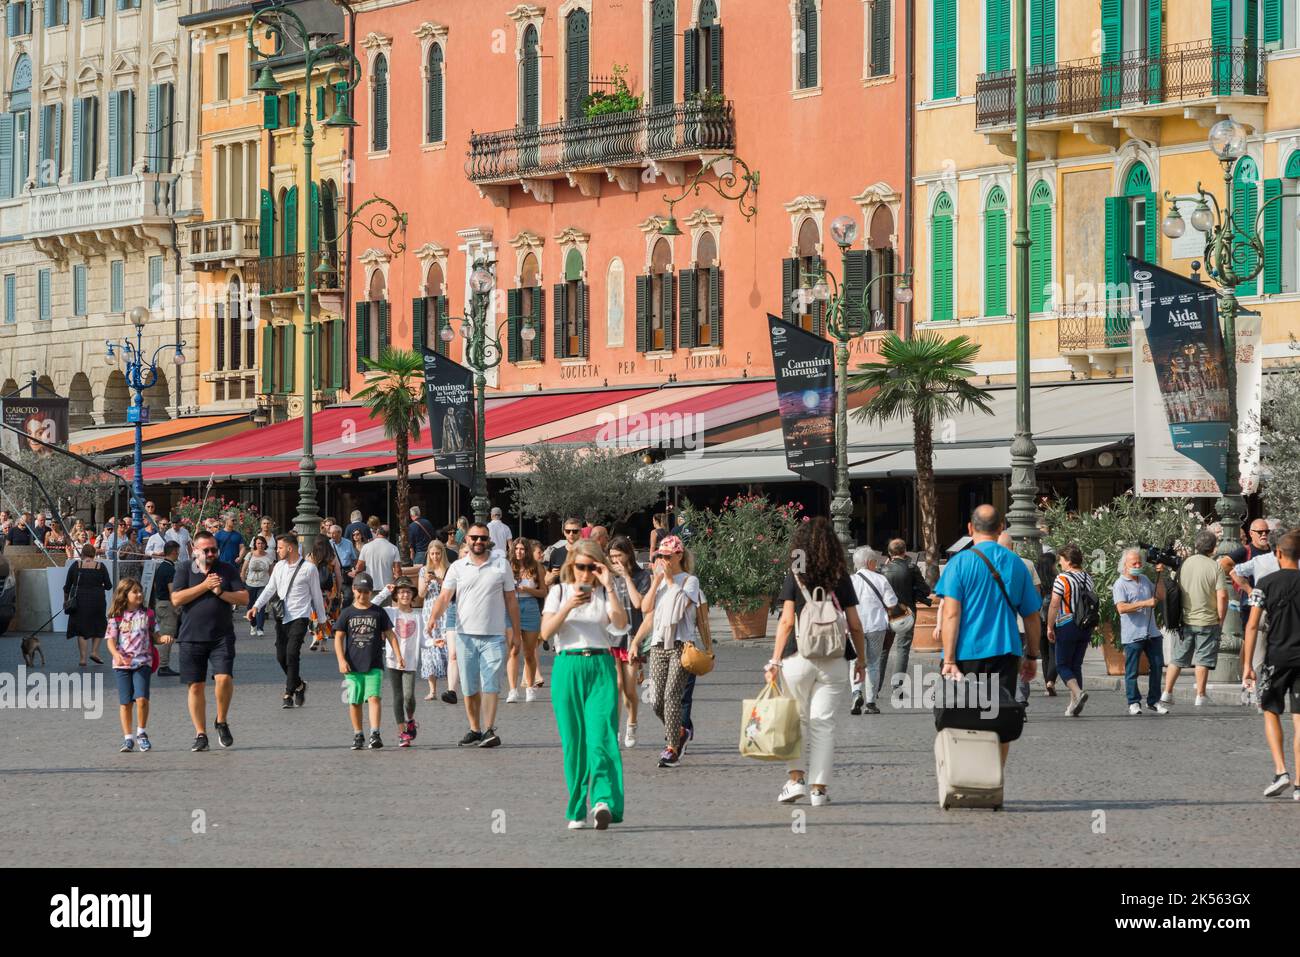 Piazza Verona, vista en verano de la gente caminando a través de Piazza Bra en el centro histórico de la ciudad de Verona, Veneto, Italia Foto de stock